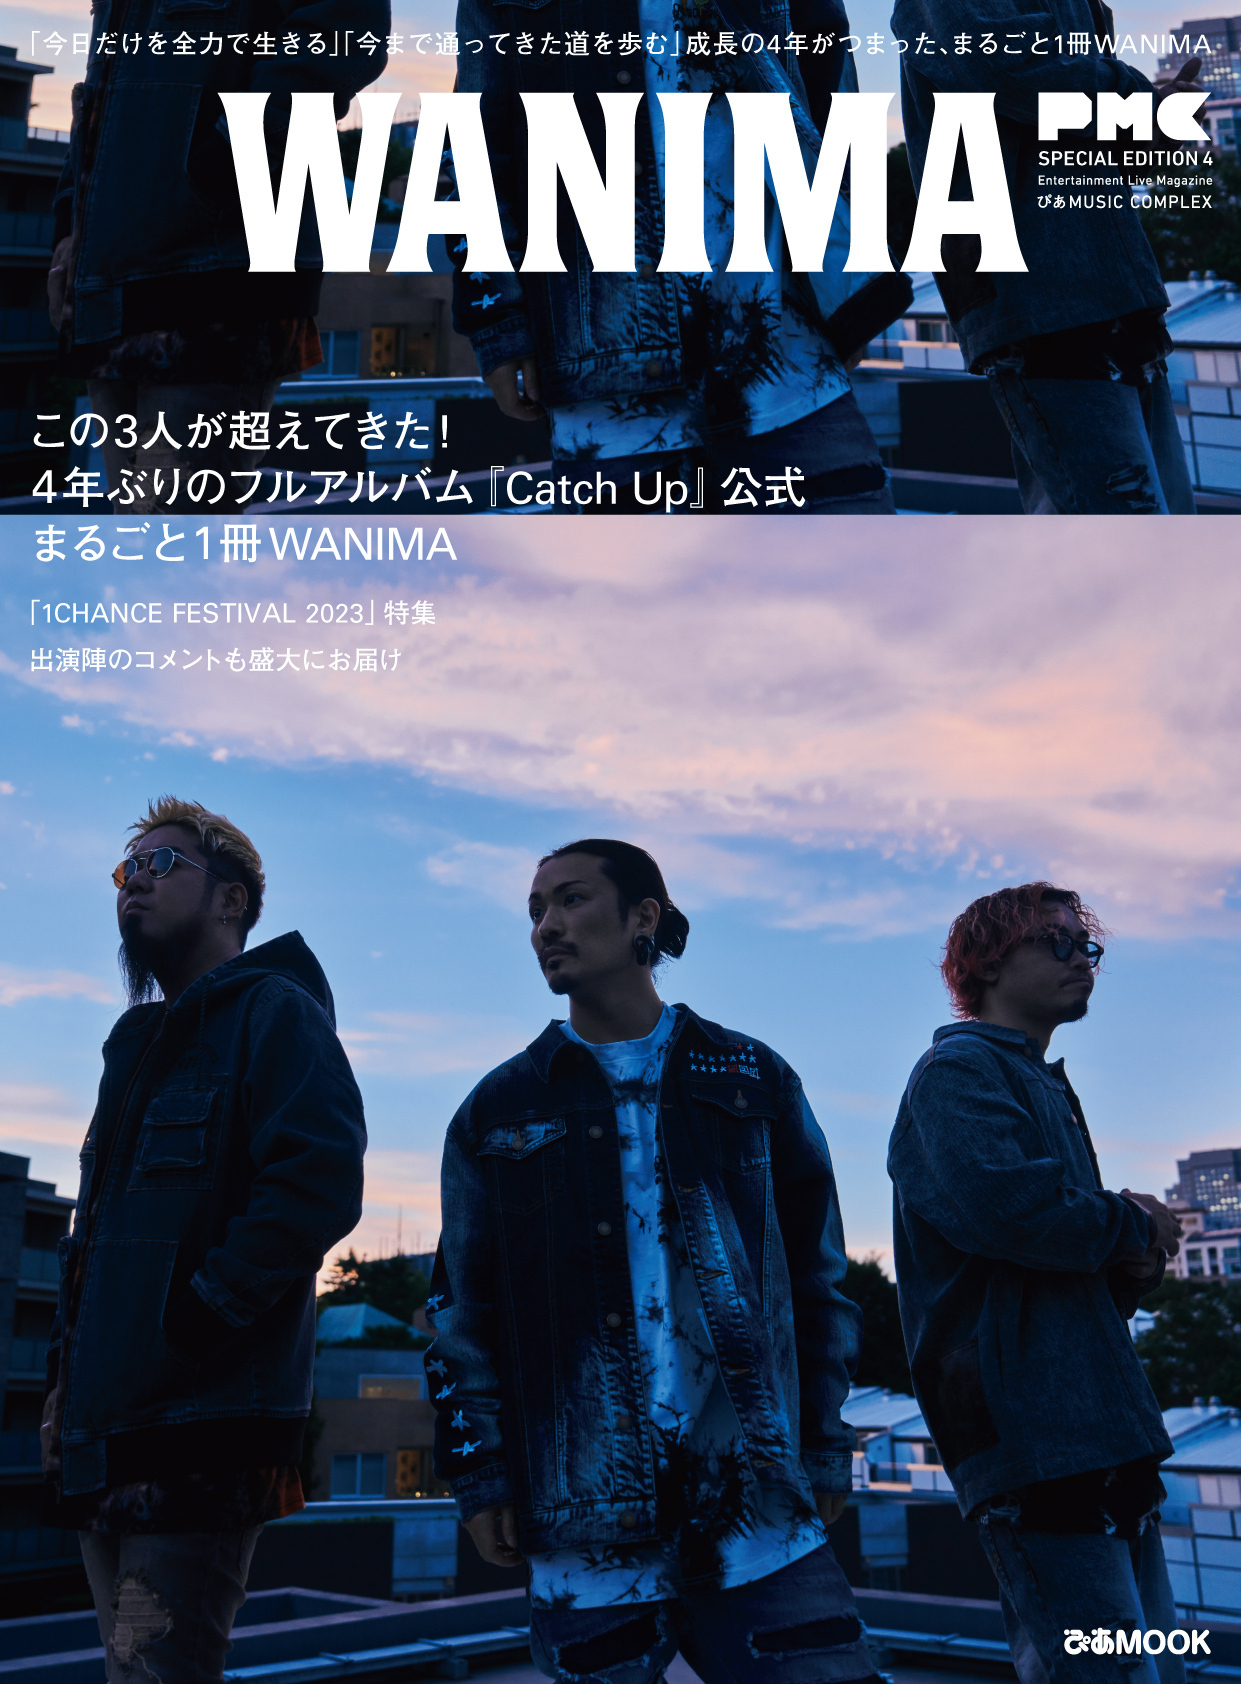 ぴあMUSIC COMPLEX（PMC）SPECIAL EDITION 4 WANIMA」発売決定!! | WANIMA